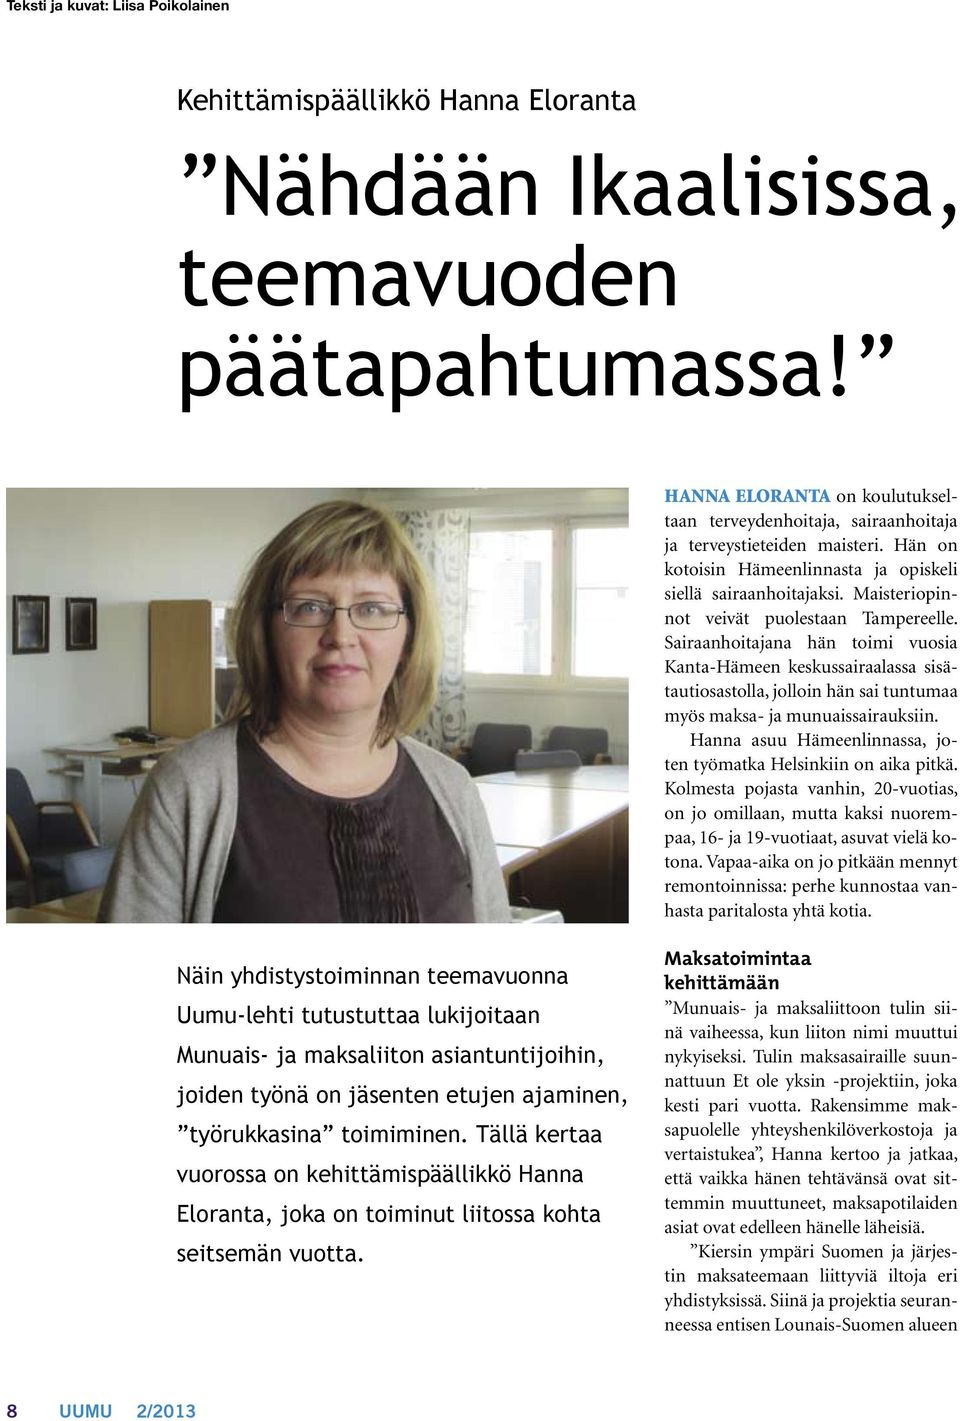 Maisteriopinnot veivät puolestaan Tampereelle. Sairaanhoitajana hän toimi vuosia Kanta-Hämeen keskussairaalassa sisätautiosastolla, jolloin hän sai tuntumaa myös maksa- ja munuaissairauksiin.